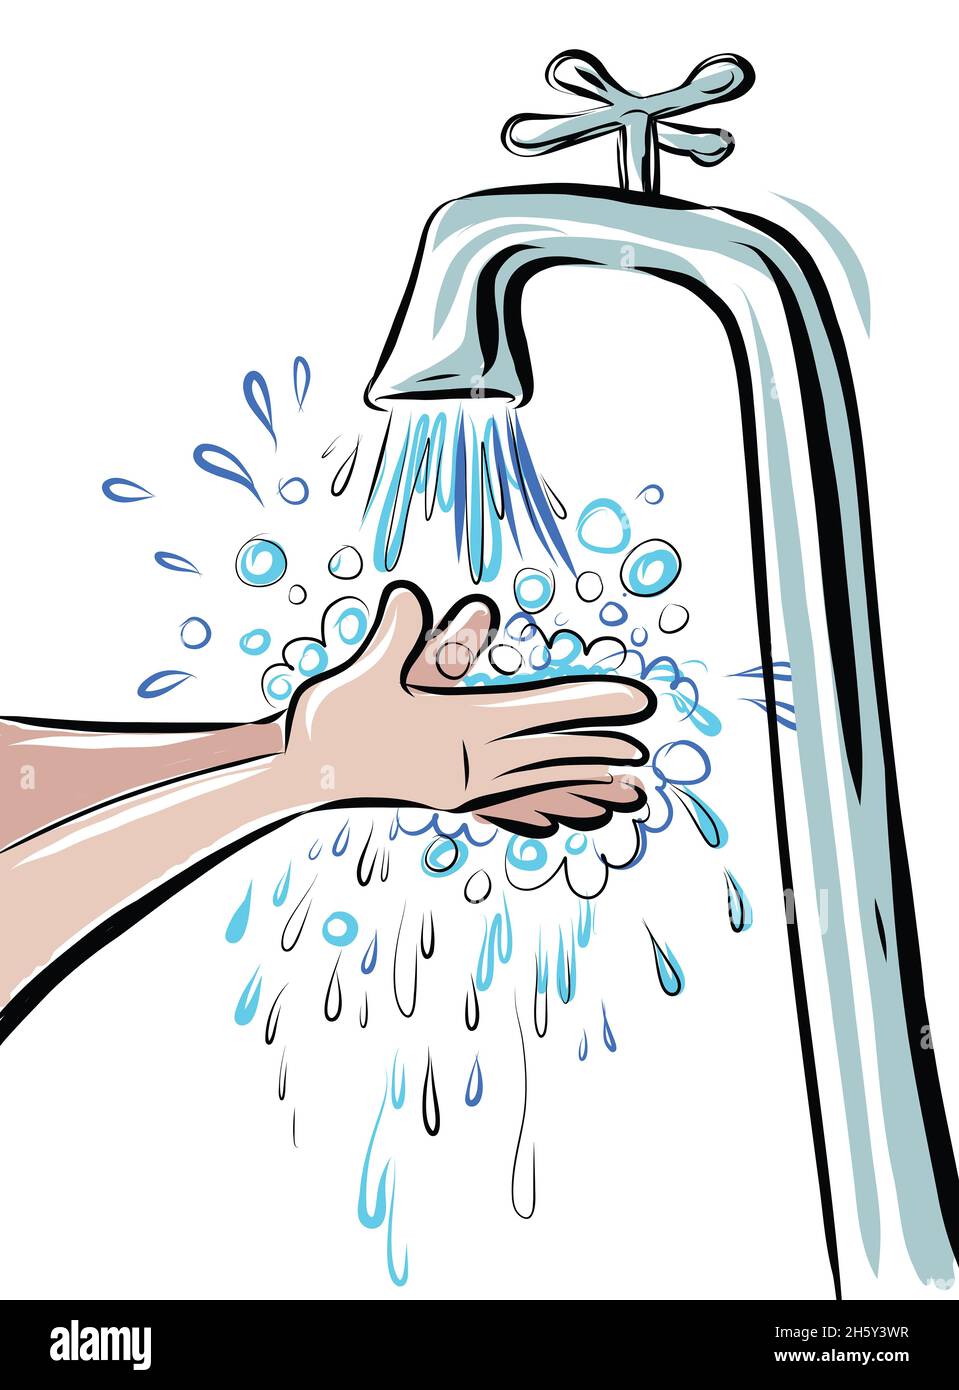 Illustration de dessin animé de deux mains lavées sous un robinet.L'eau  coule et suce et éclabousse partout Photo Stock - Alamy